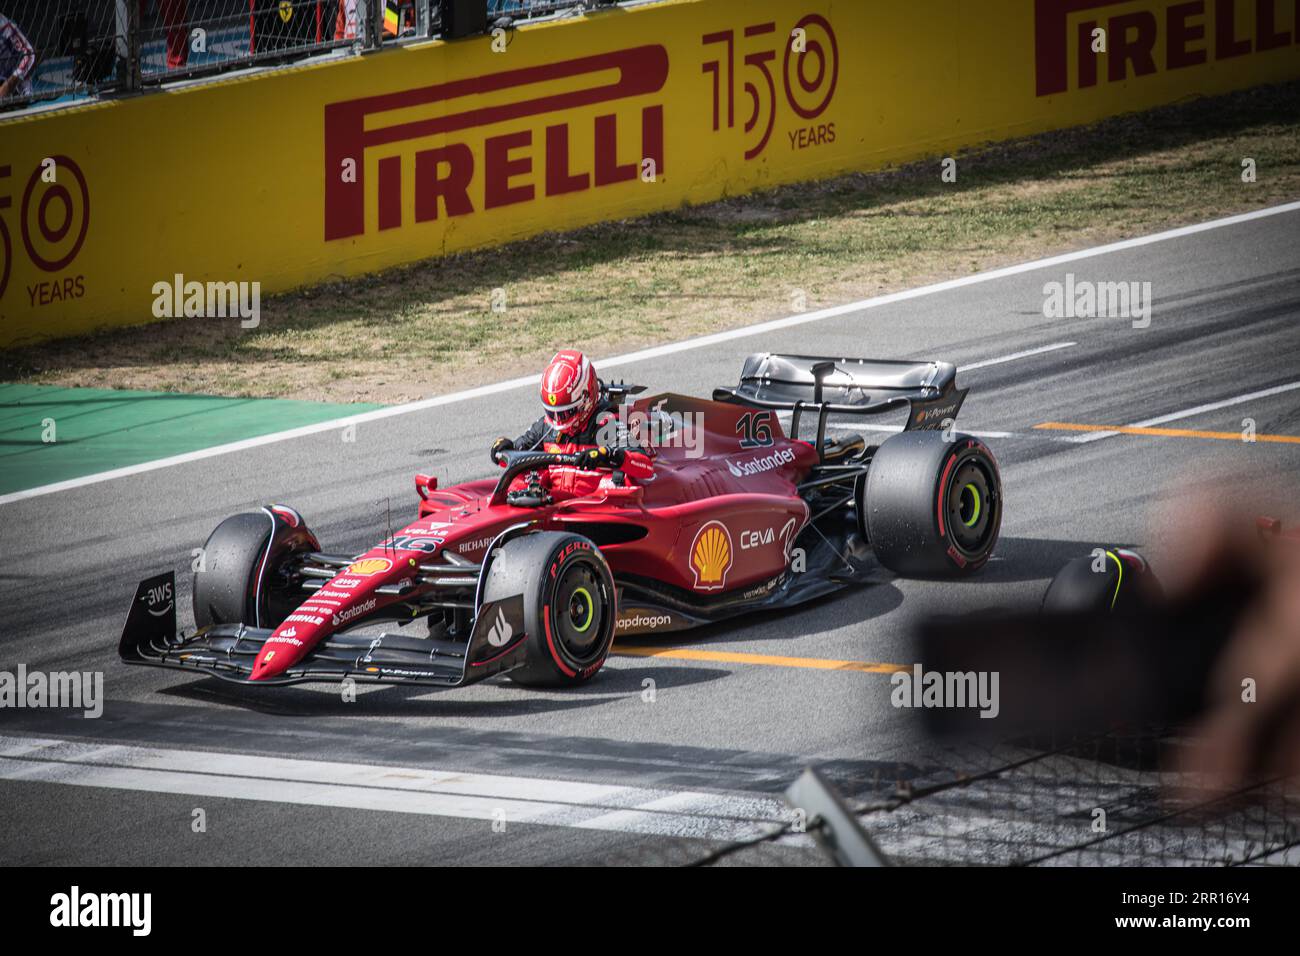 Charles Leclerc ist im Moment gefangen, als er sich auf den Ausstieg aus seinem Ferrari vorbereitet, nachdem er in der Qualifikationsrunde den ersten Platz belegt hat. Stockfoto